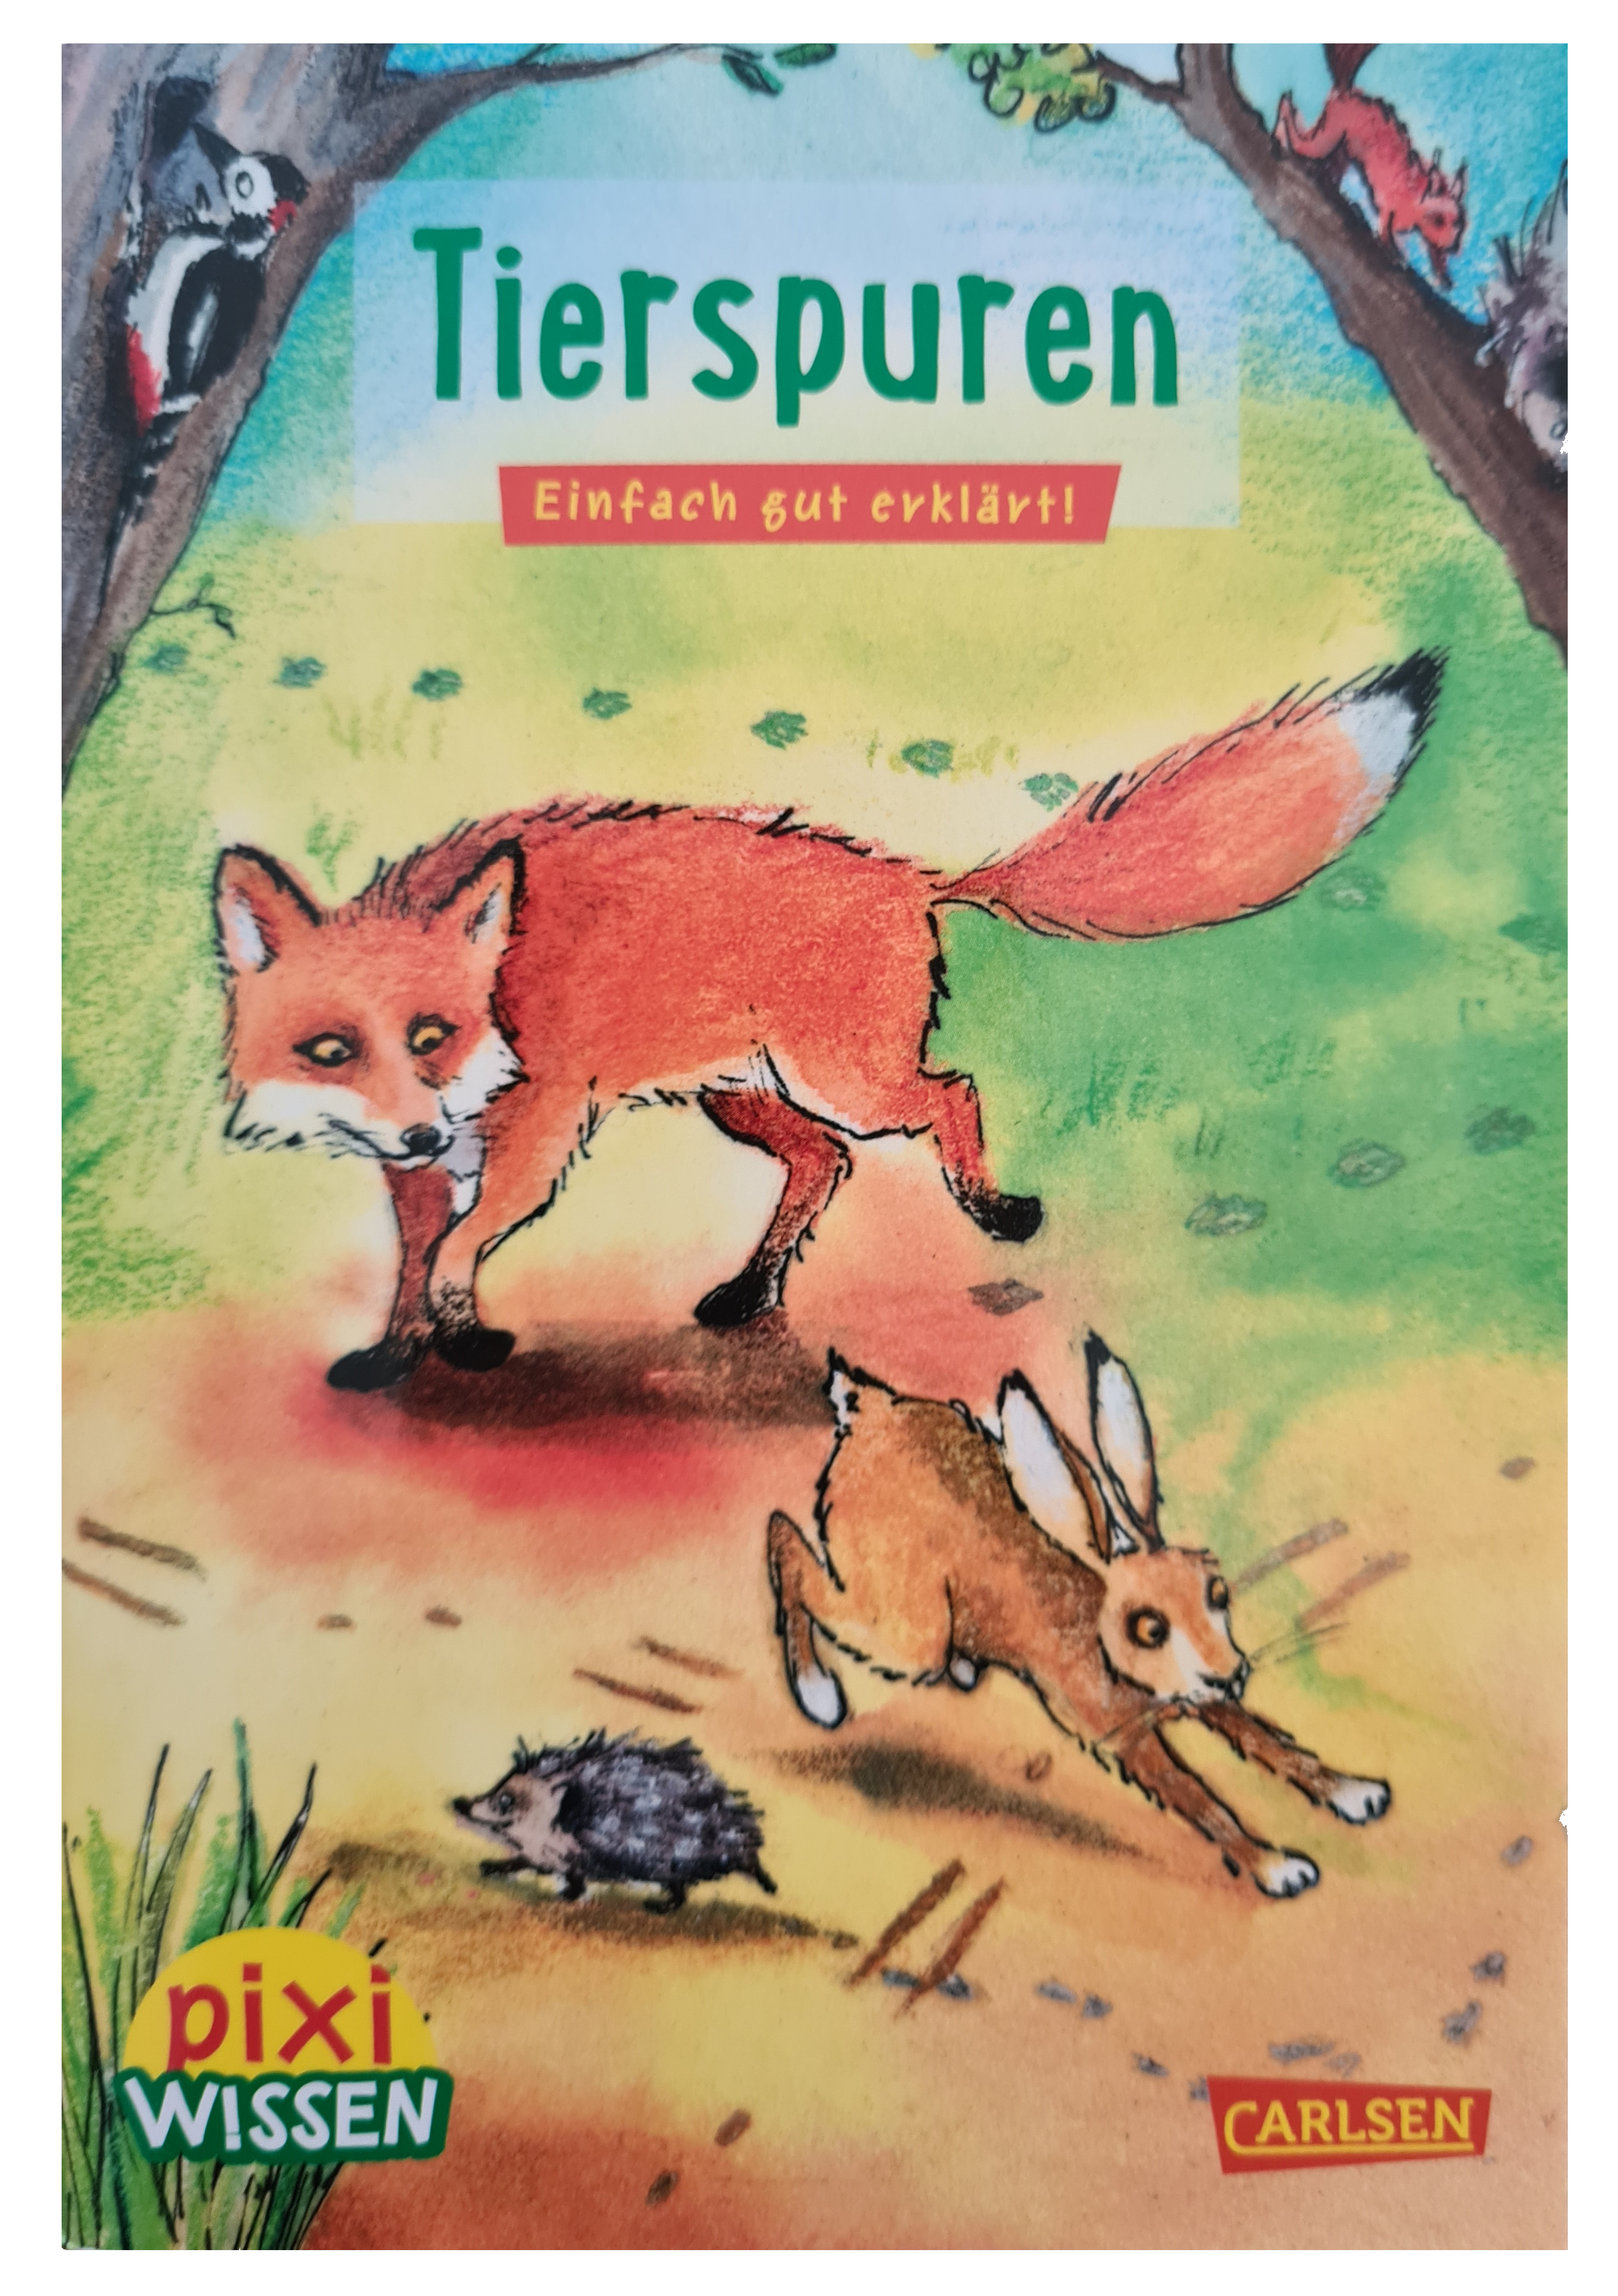 Kinderbuch pixi wissen "Tierspuren"